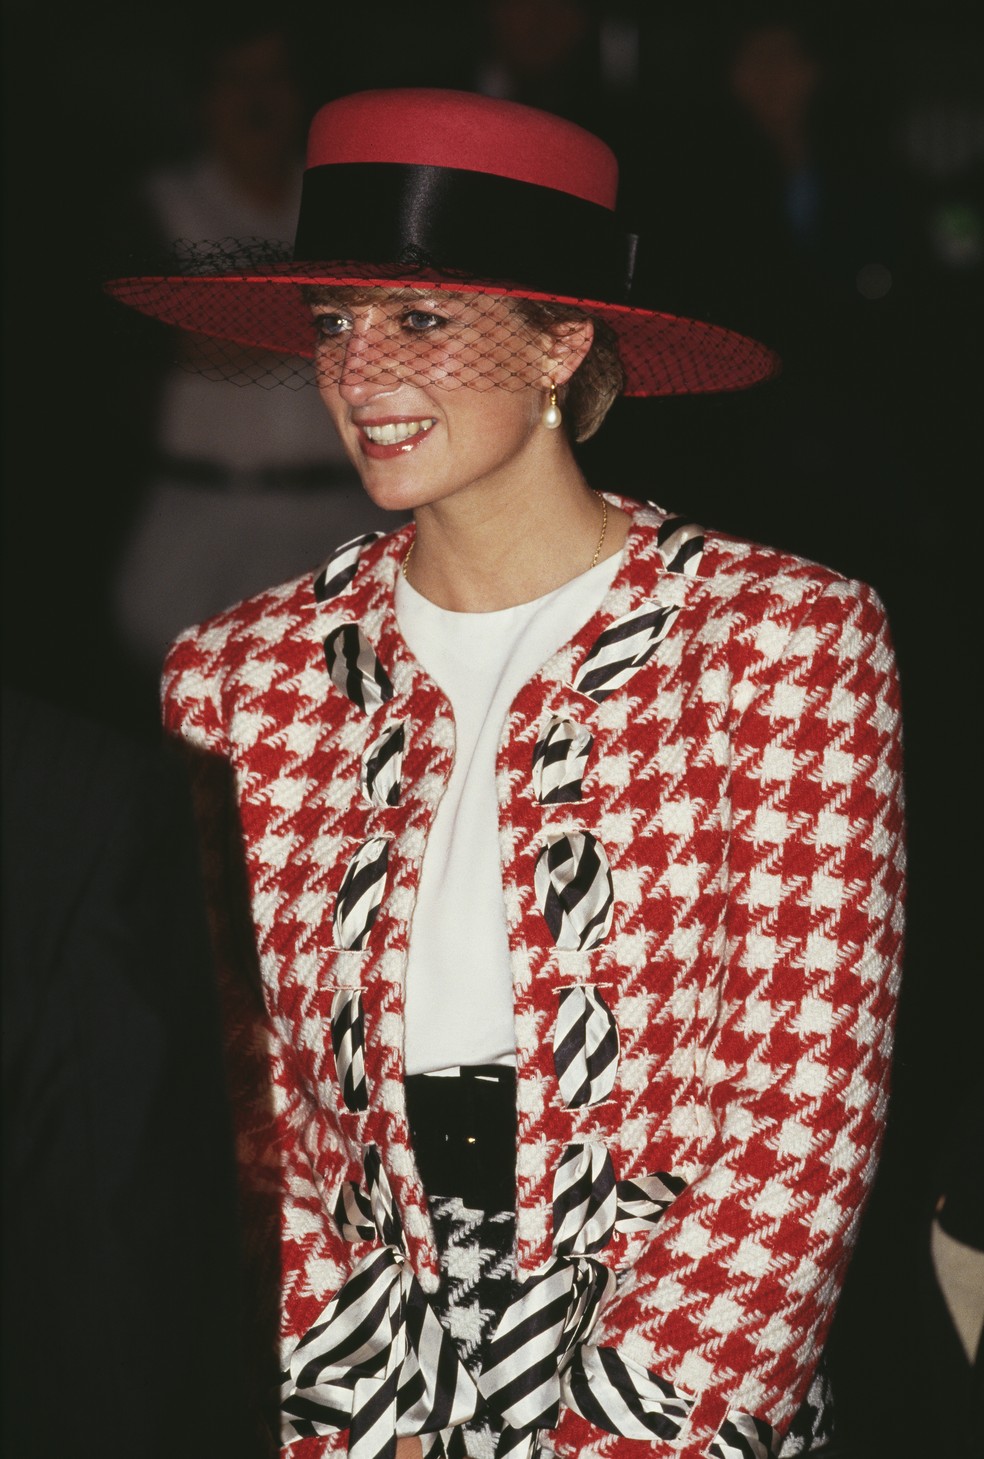 Diana veste as cores do Canadá em visita ao país em 1991 — Foto: Getty Images